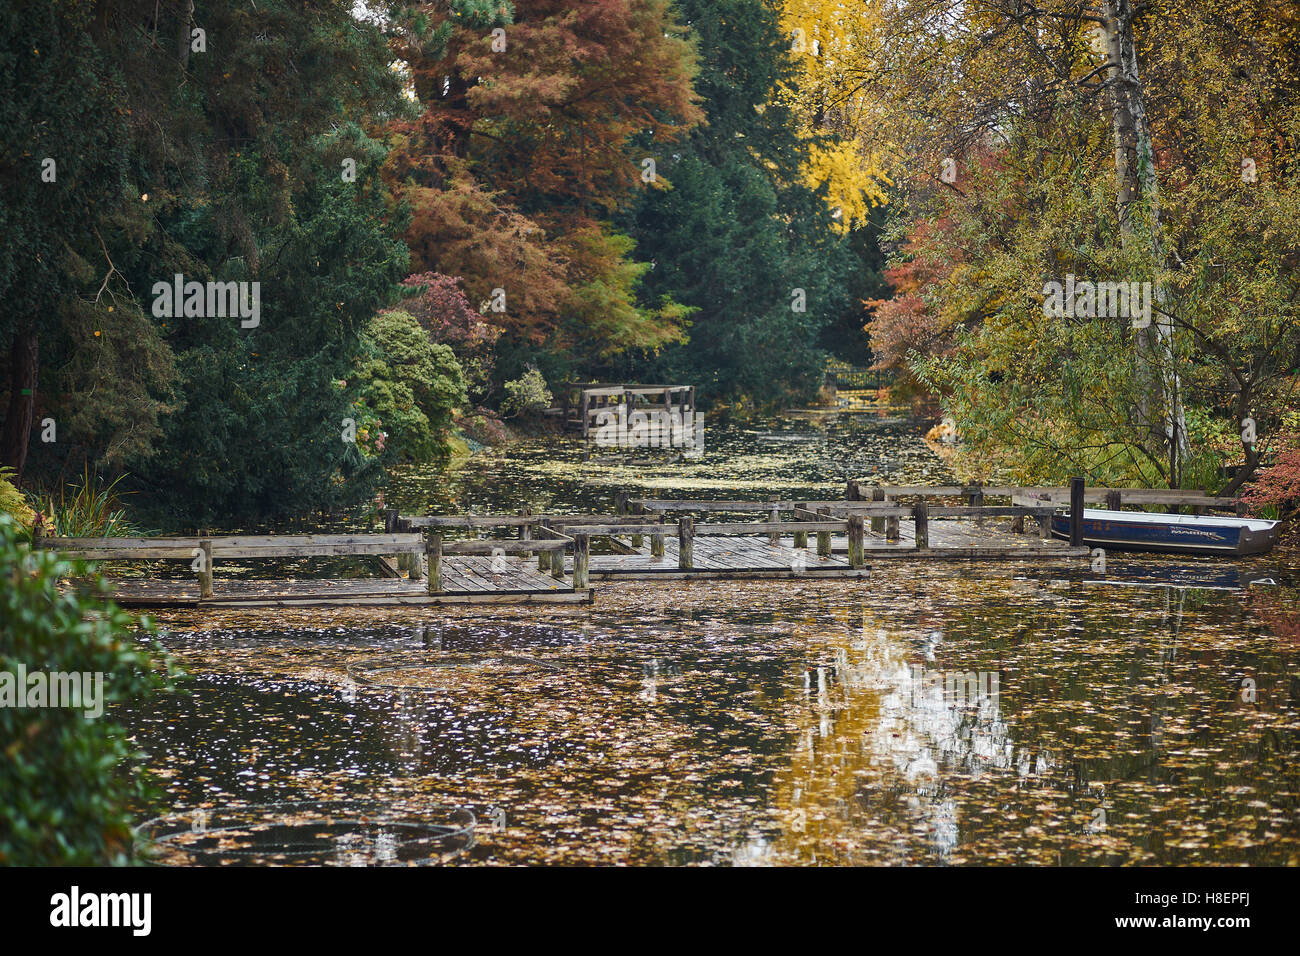 Le silence de l'automne le vide de la solitude de l'eau calme Banque D'Images